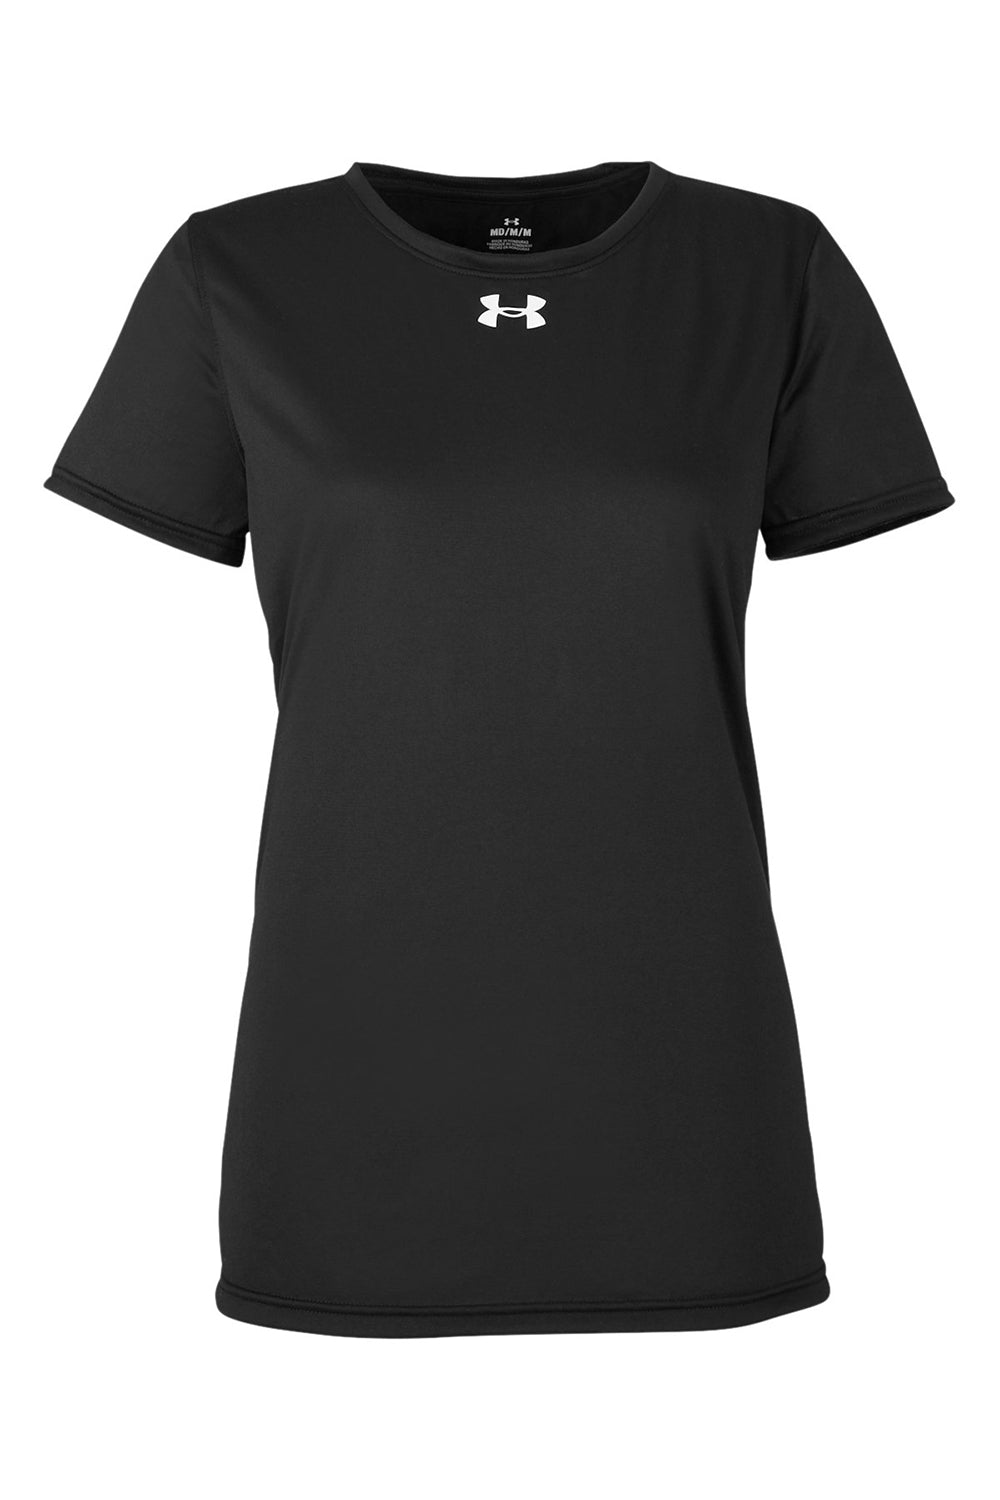 Under Armour 1376847 Womens Team Tech Moisture Wicking Short Sleeve Crewneck T-Shirt Black Flat Front